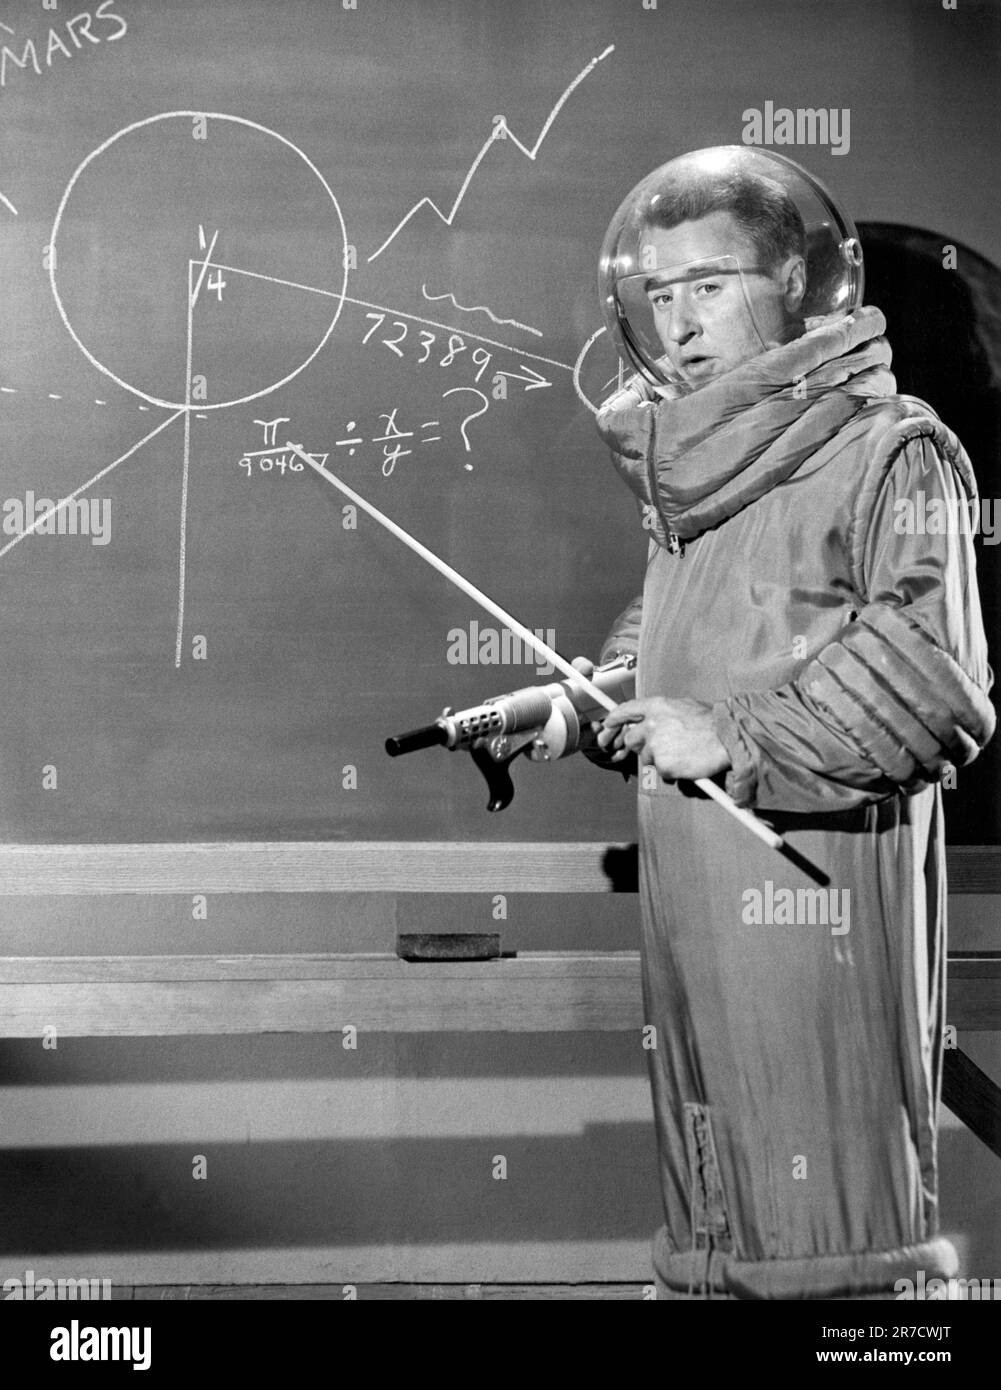 Hollywood, Californie: c. 1958 acteur et comédien George Gobel portant un ensemble spatial en se tenant à un tableau noir d'école. Banque D'Images